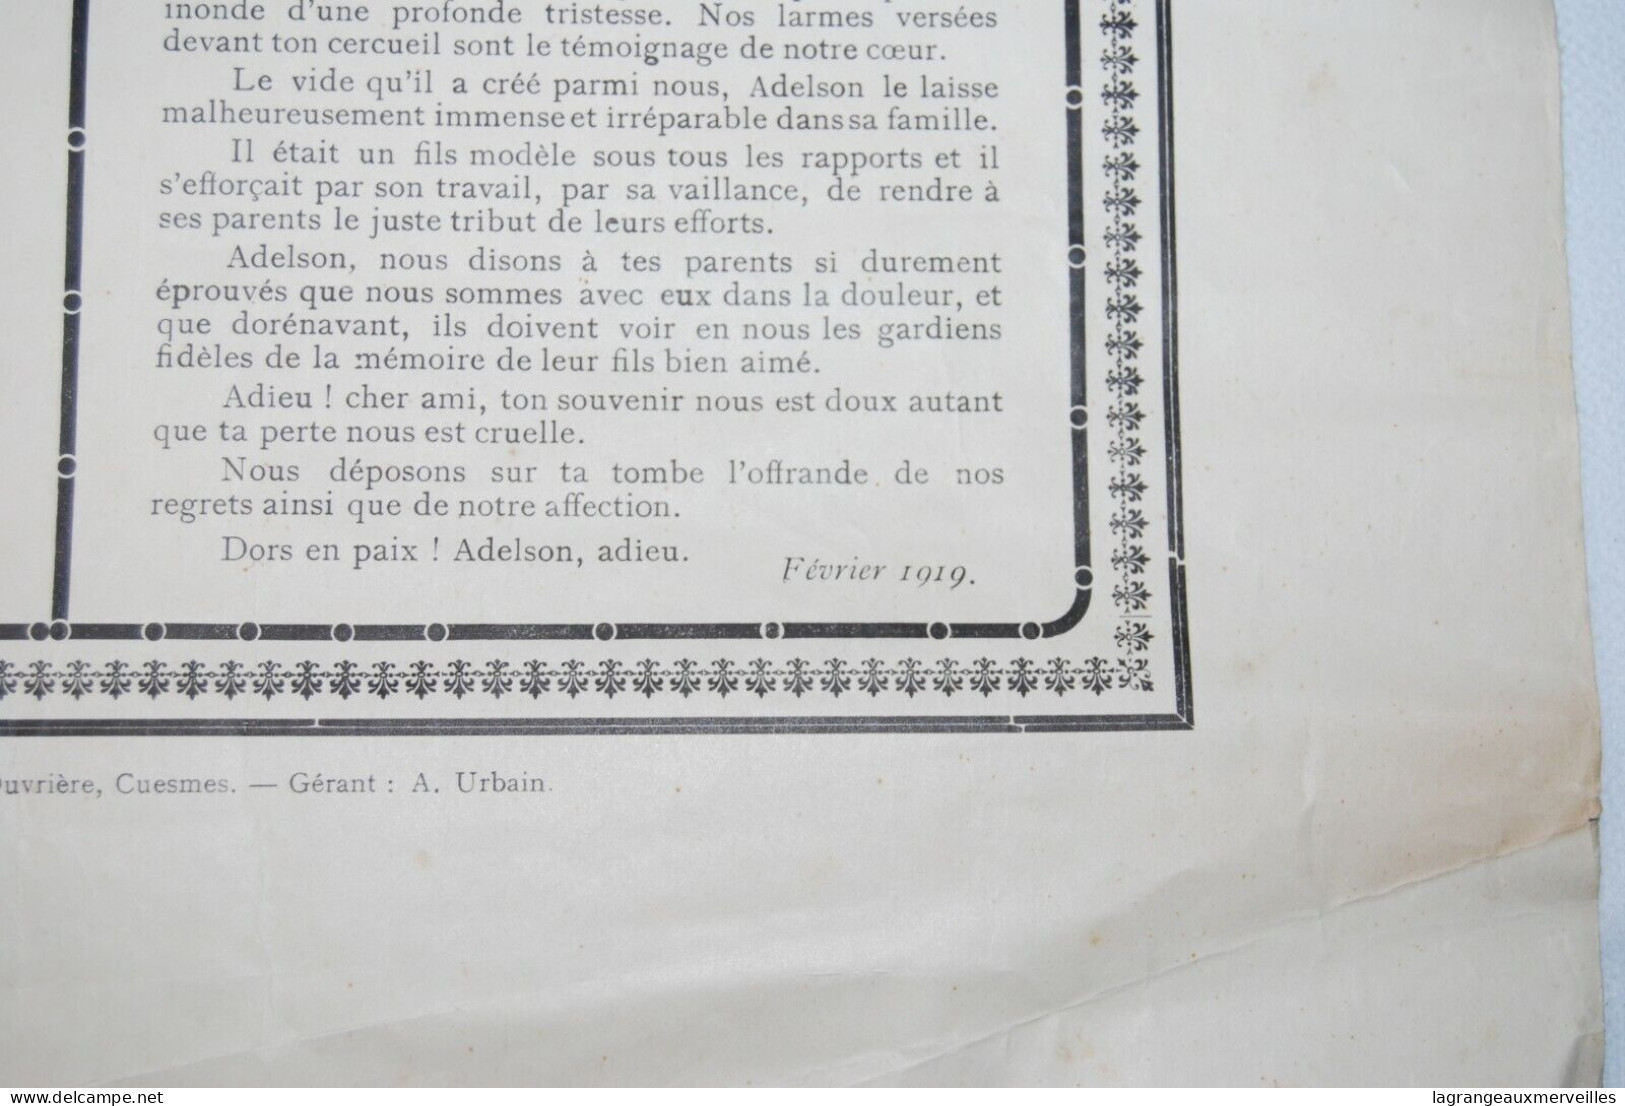 AF1 Affiche - Discours Sur La Tombe De Adelson Godart - 1919 - Afiches